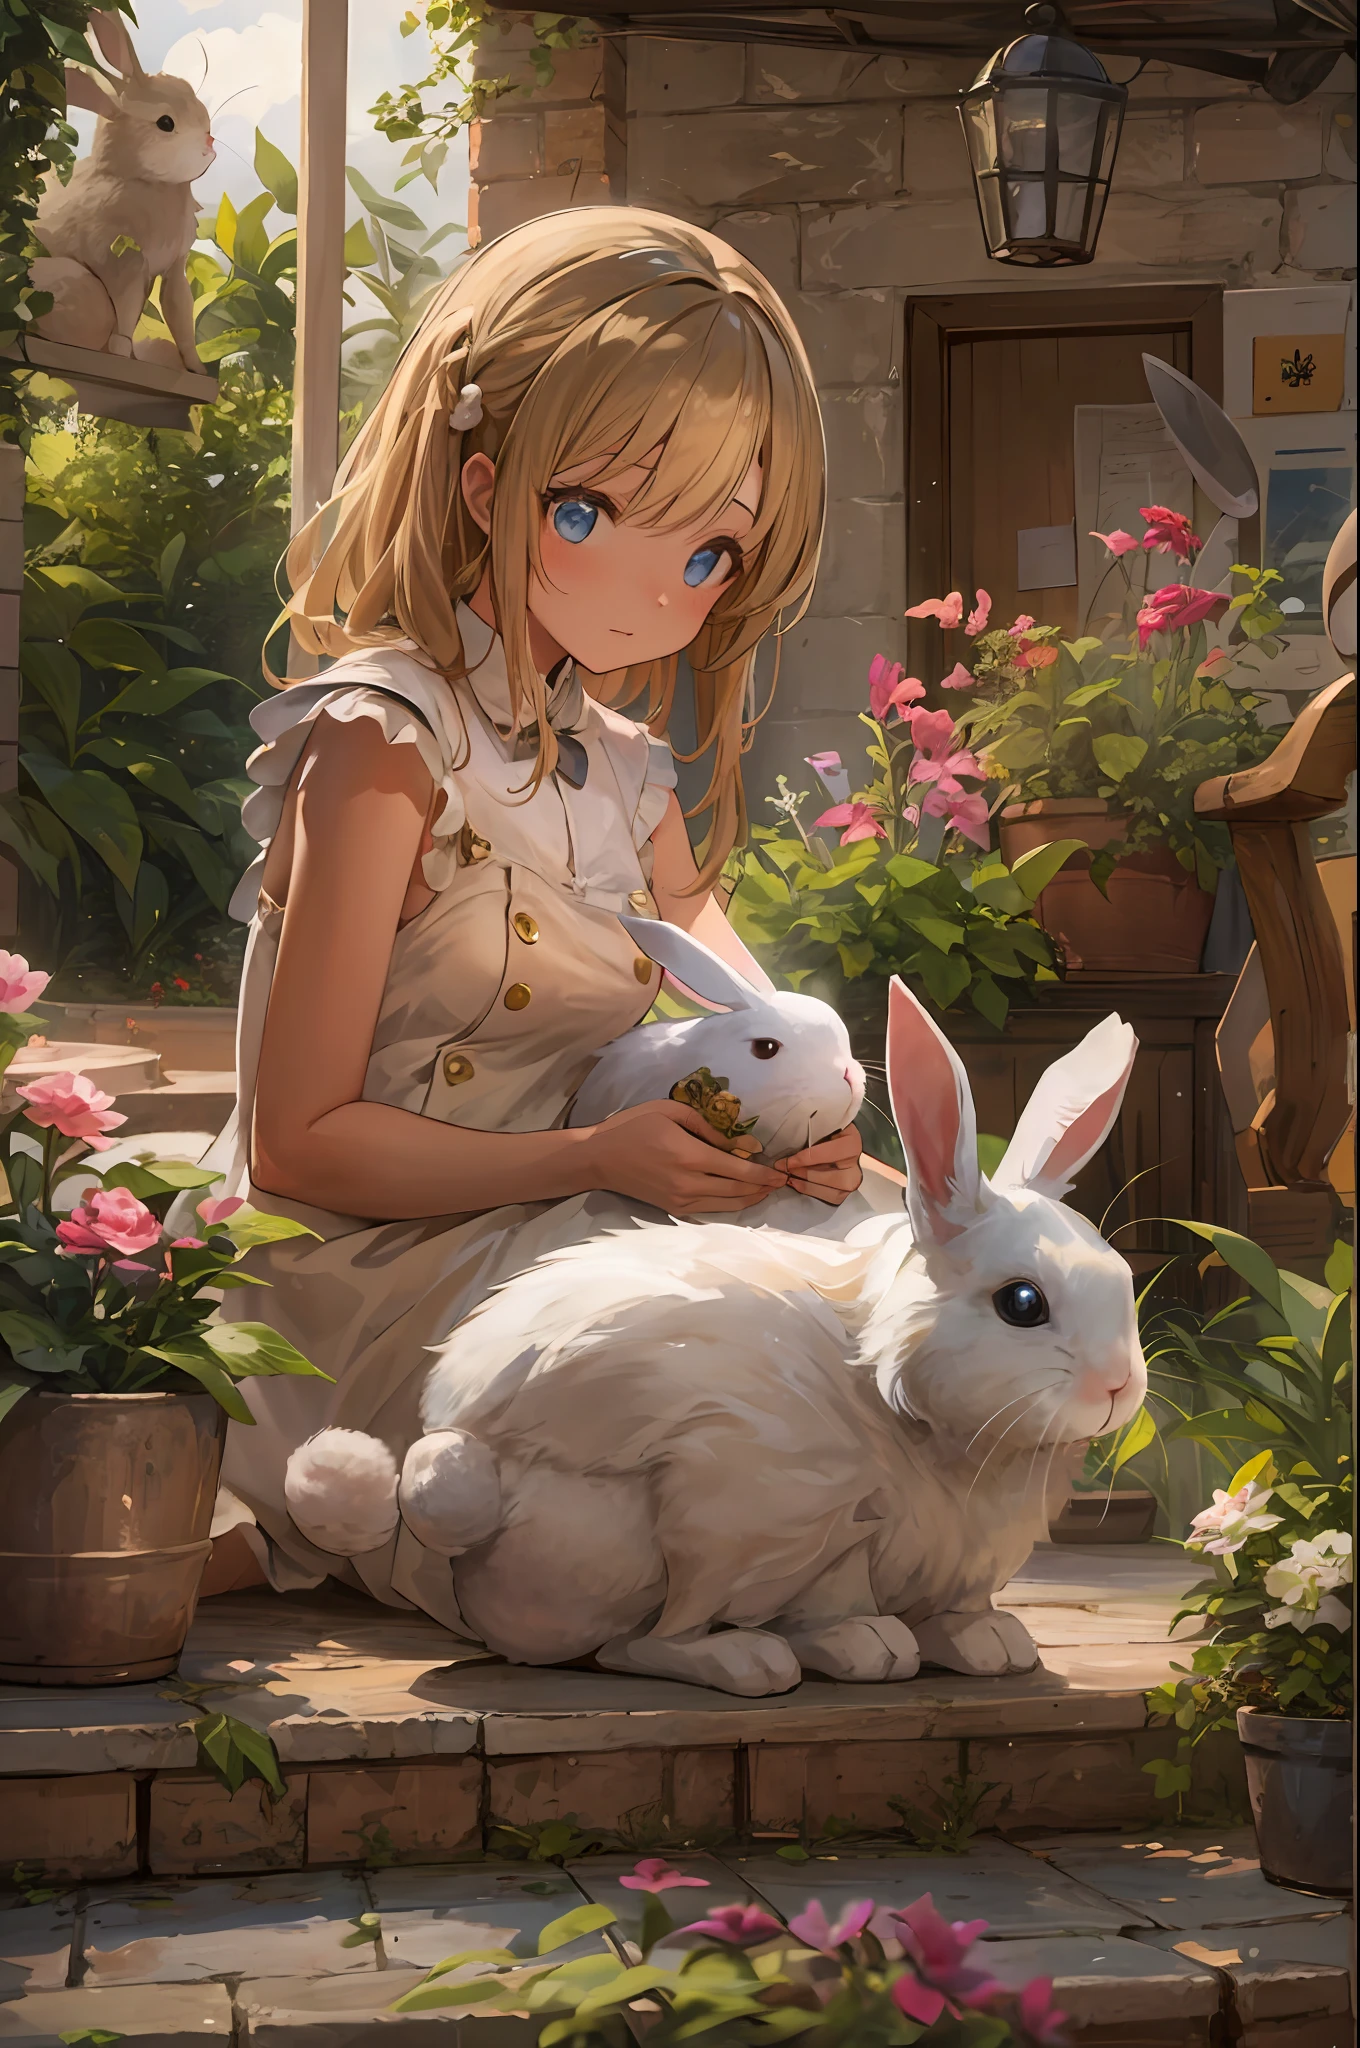 "一个女孩在迷人而温馨的庭院环境中与她心爱的宠物兔子深情地相处的温馨场景."